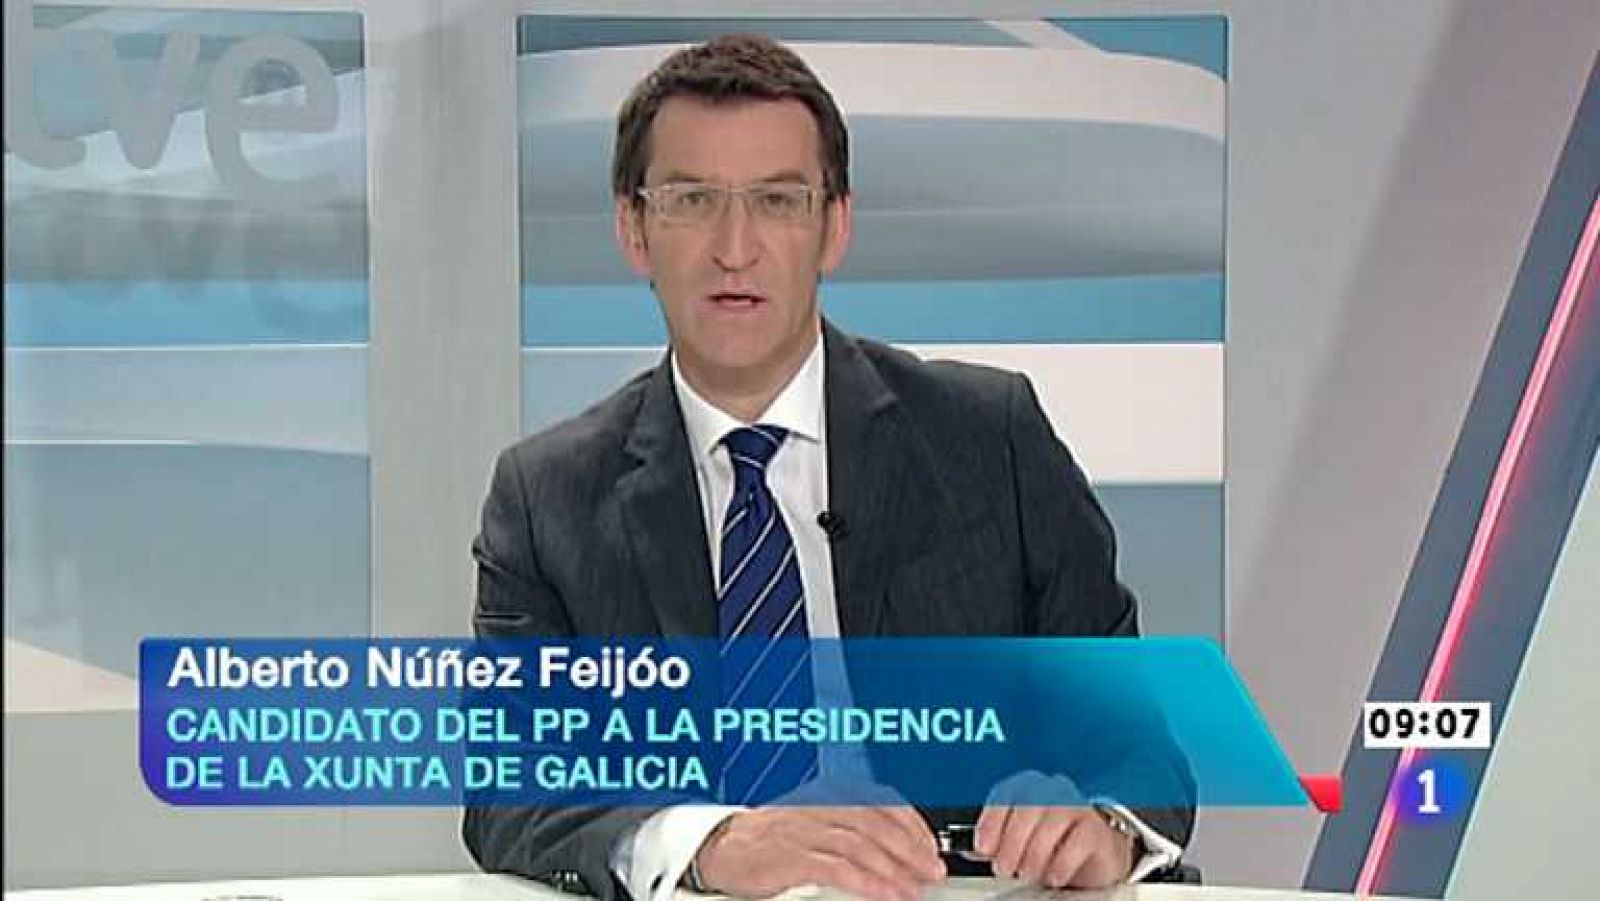 Los desayunos de TVE - Alberto Núñez Feijóo, candidato del PP a la presidencia de la Xunta de Galicia